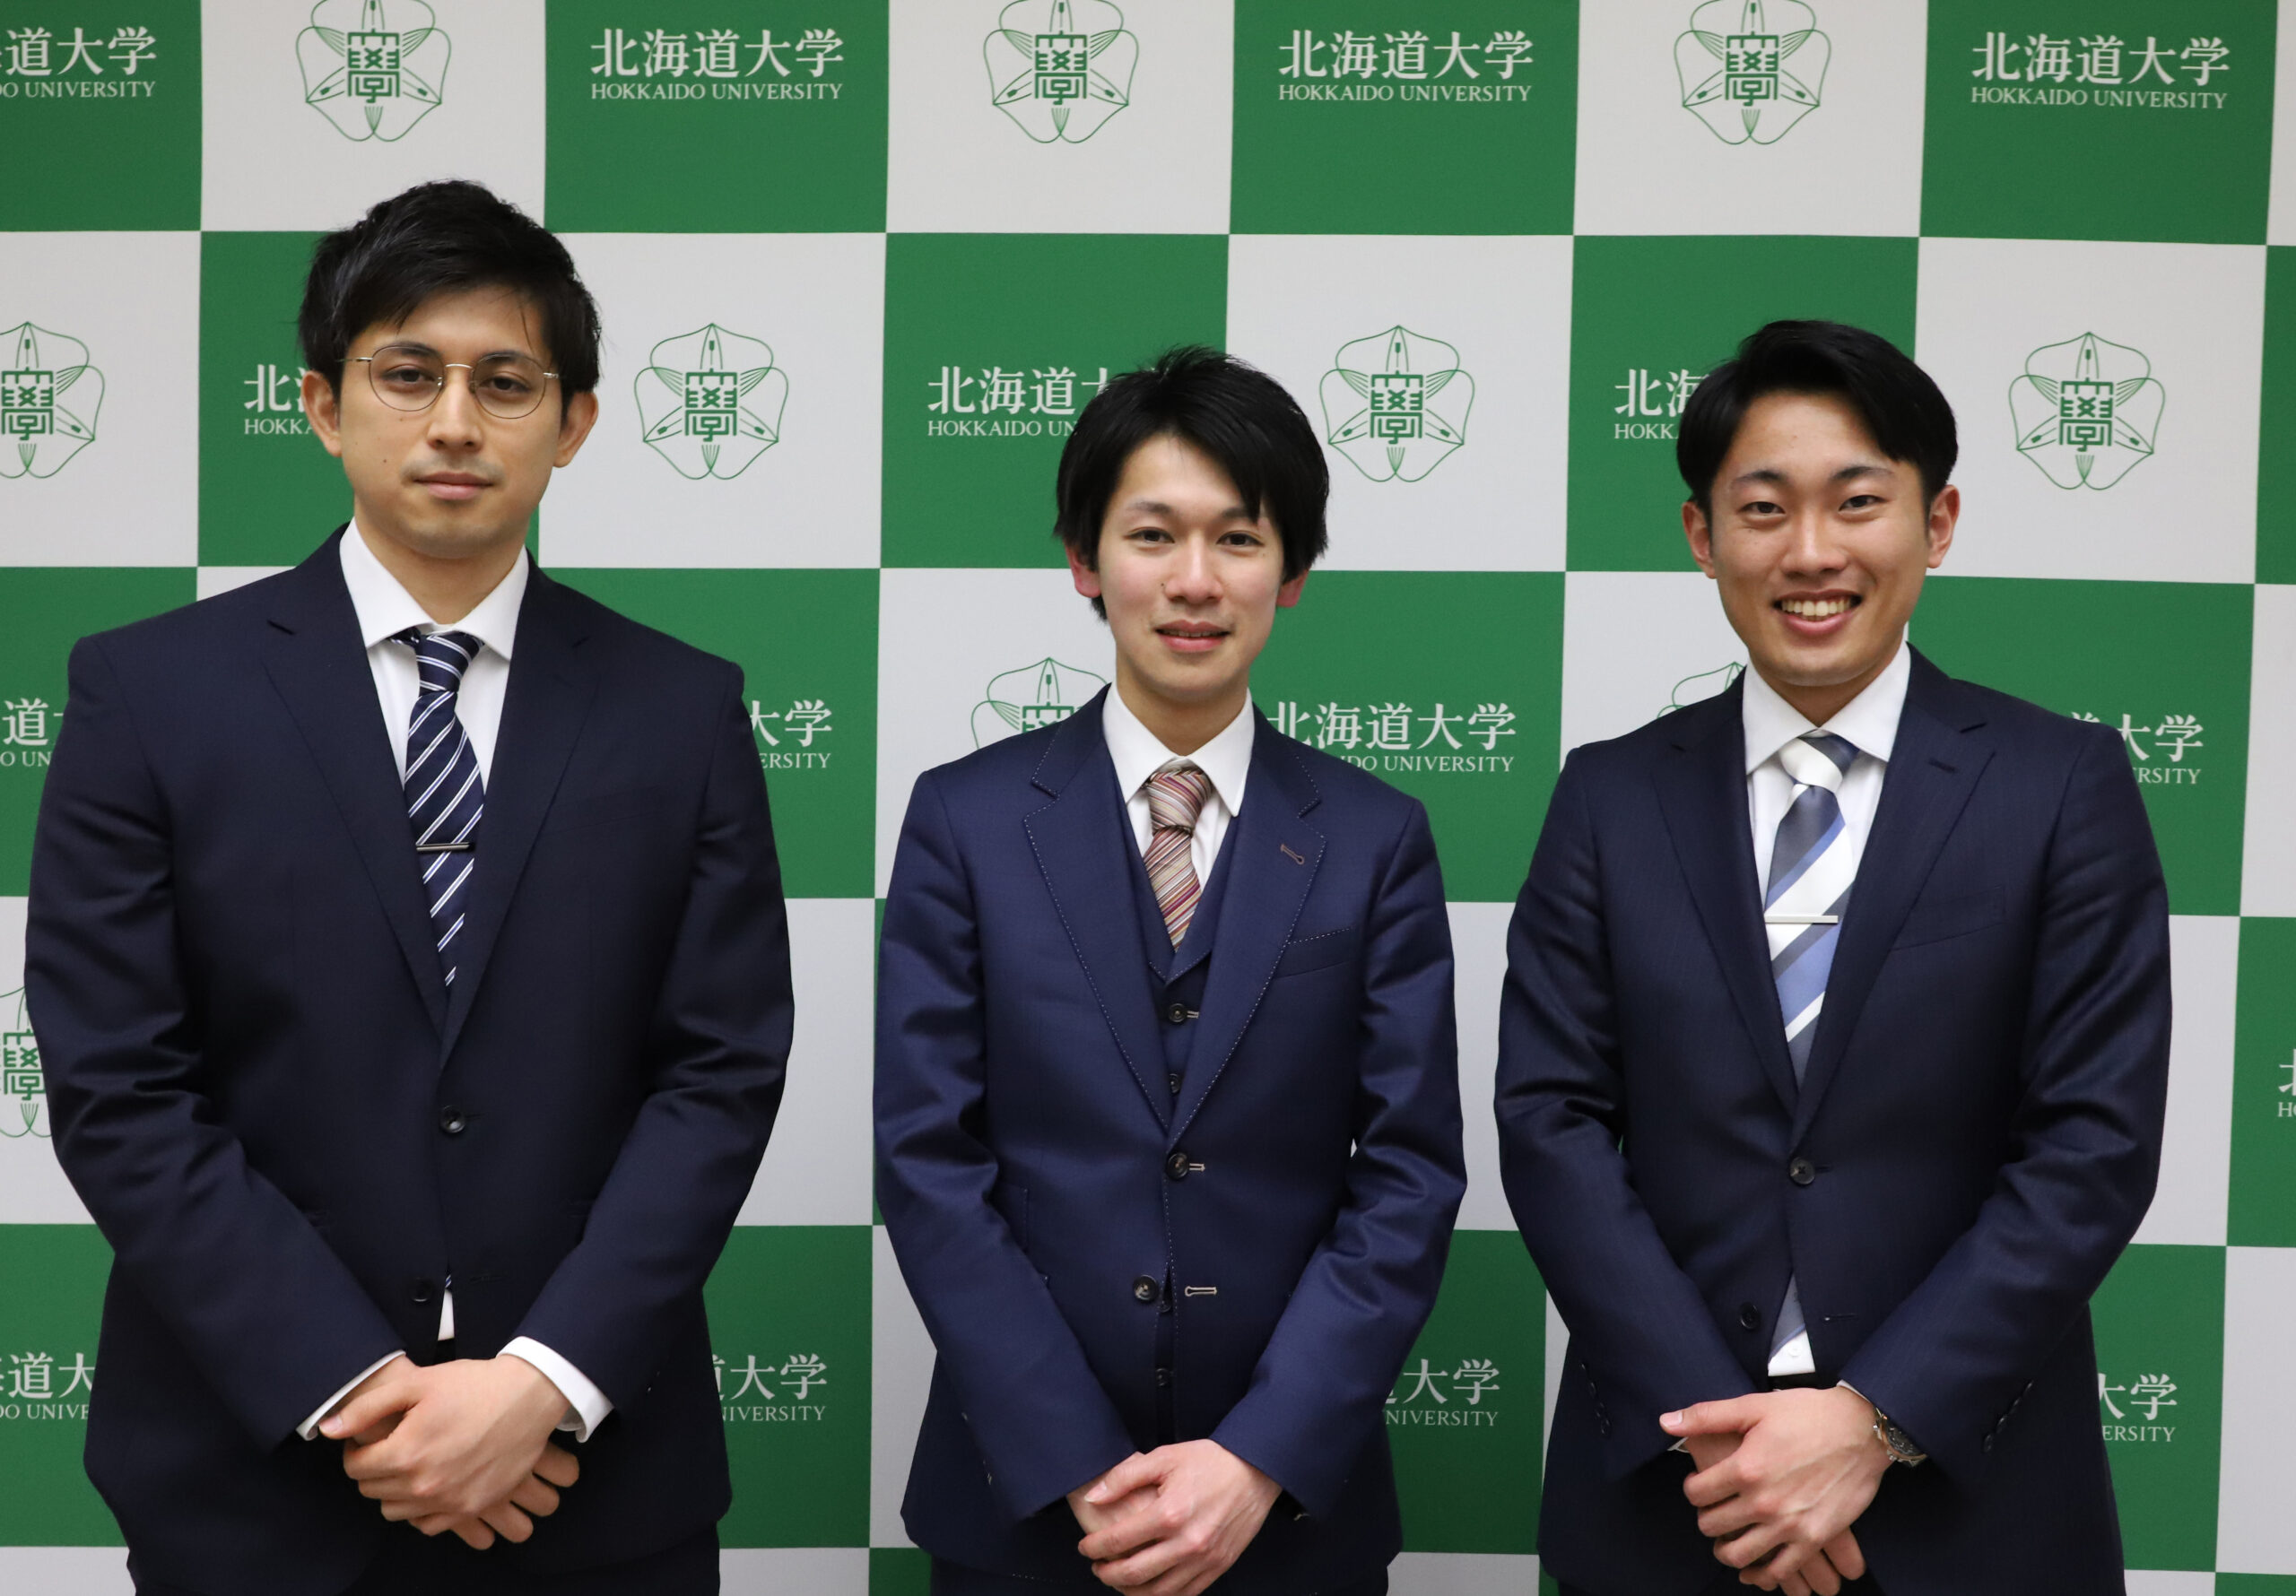 「地域の未来社会SOUZOUプロジェクト」採択チーム第1号！ 左から、松岡さん、森田さん、山崎さん。